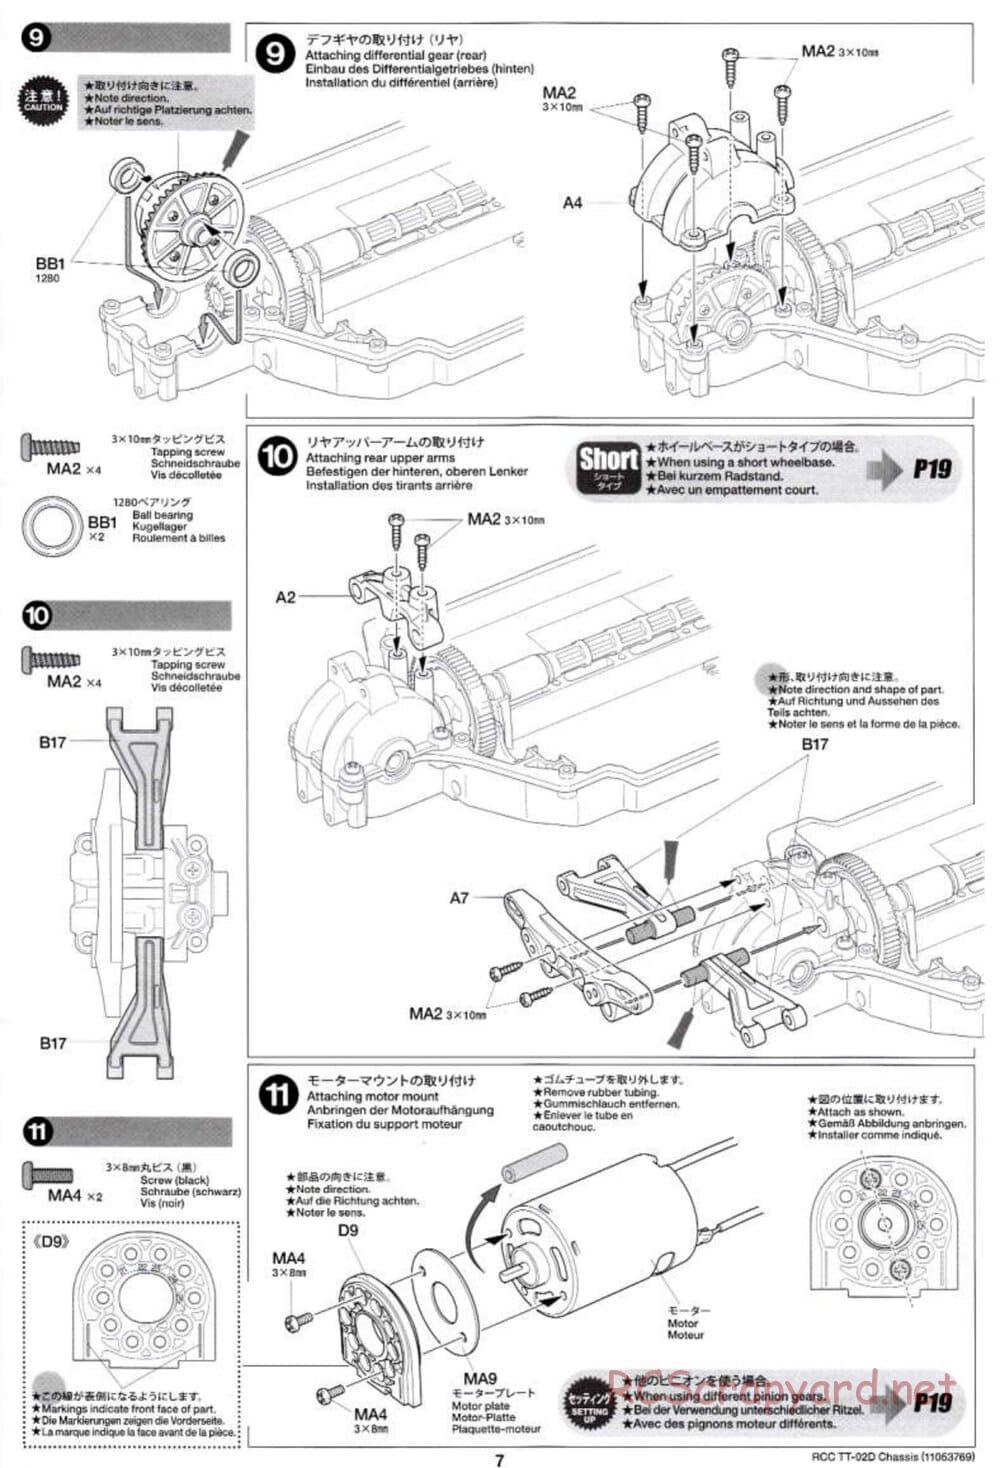 Tamiya - TT-02D Chassis - Manual - Page 7